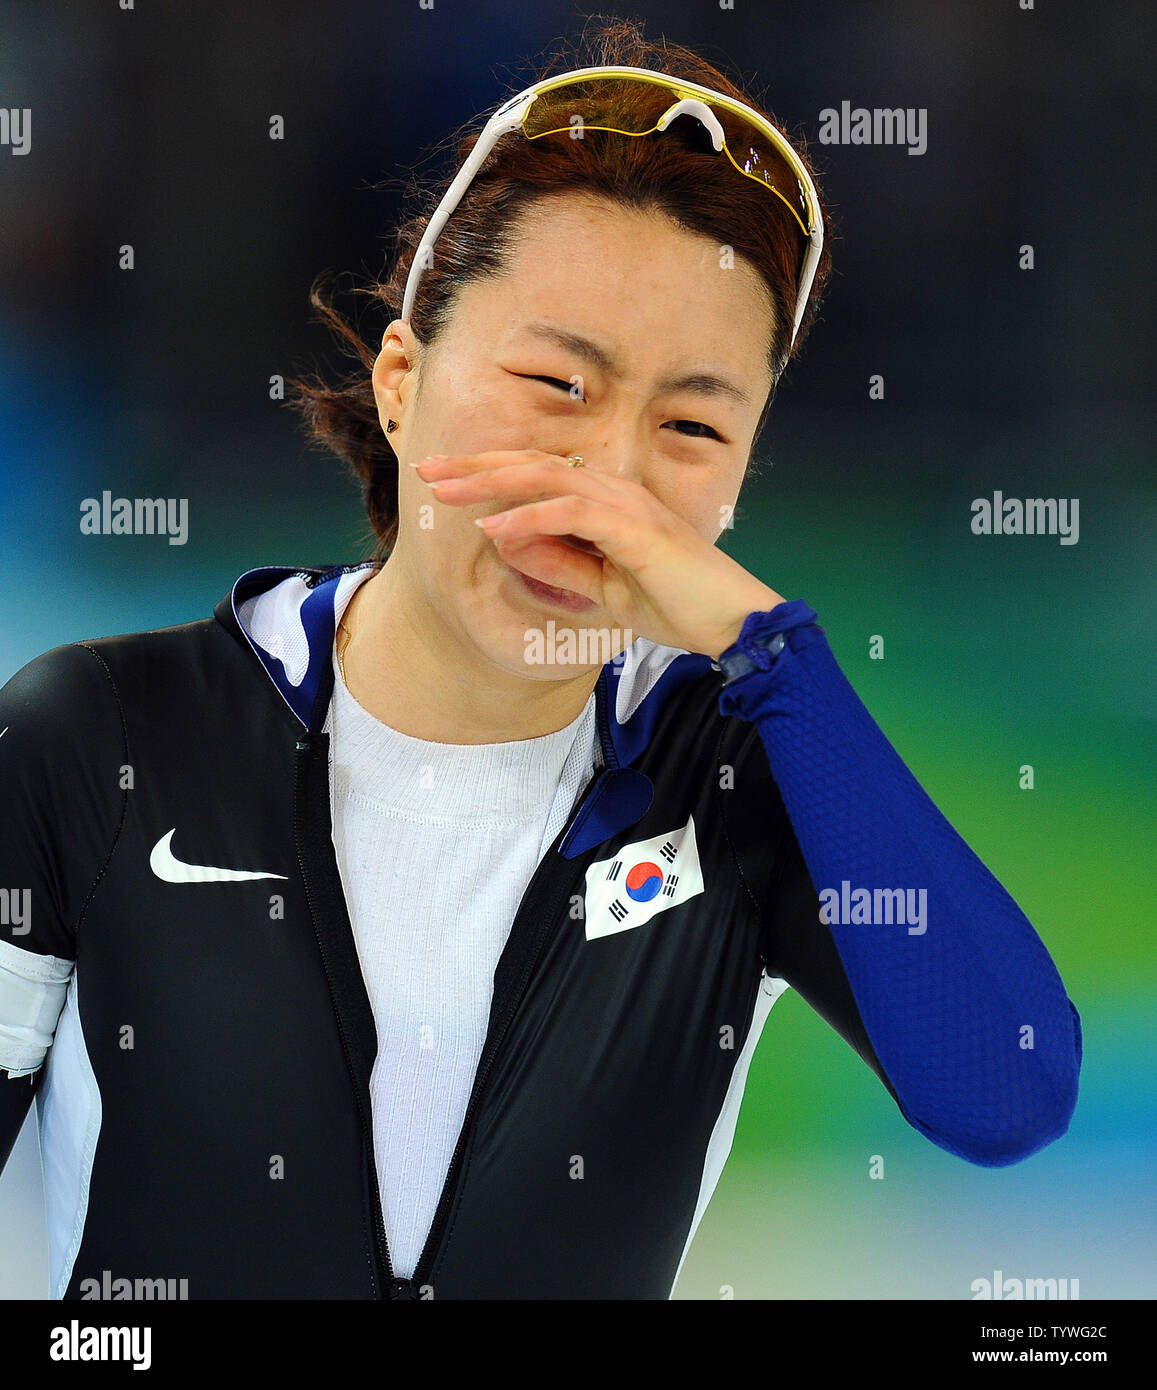 Sang-Hwa Lee de Corée commence à se rendre compte qu'elle était arrivé en tête dans les 500 mètres de patinage de vitesse à l'anneau olympique de Richmond, à Vancouver, Canada, durant les Jeux Olympiques d'hiver de 2010 le 16 février 2010. Lee a remporté la médaille d'or avec un temps combiné de 76,09. UPI/Roger L. Wollenberg Banque D'Images